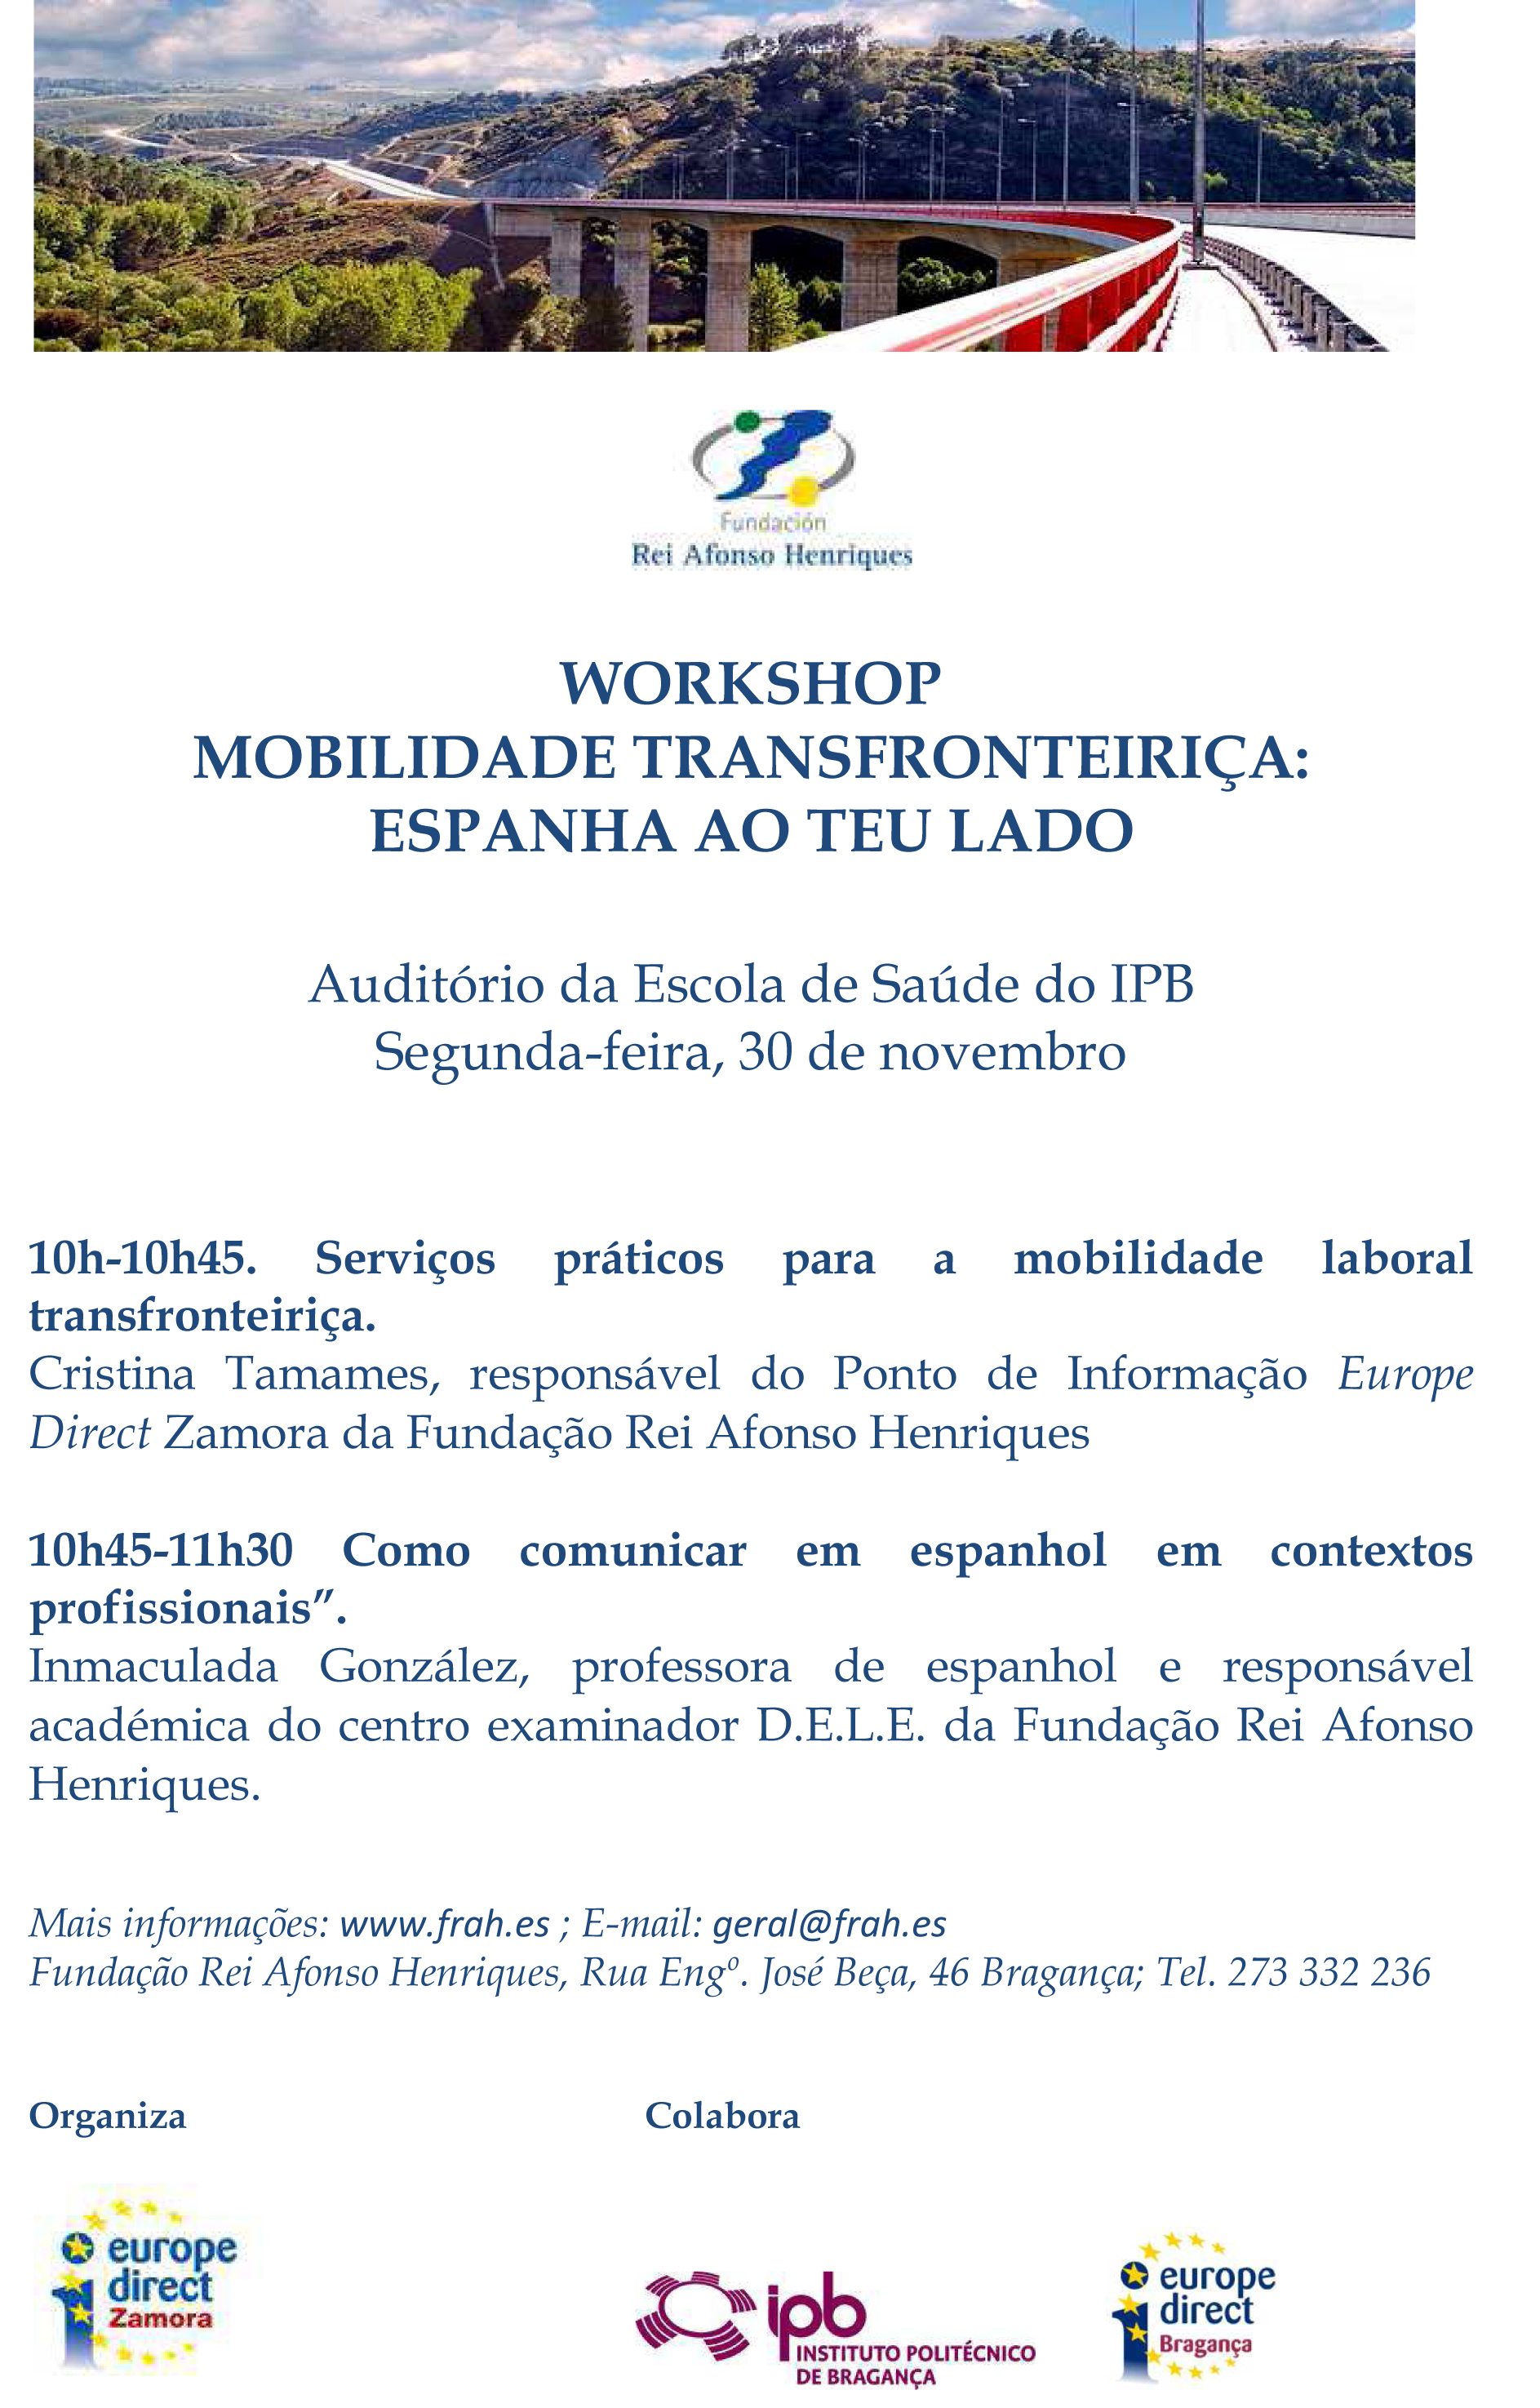 Workshop: “Mobilidade Transfronteiriça: Espanha ao teu lado” – 30 de novembro – Escola Superior de Saúde do IPB